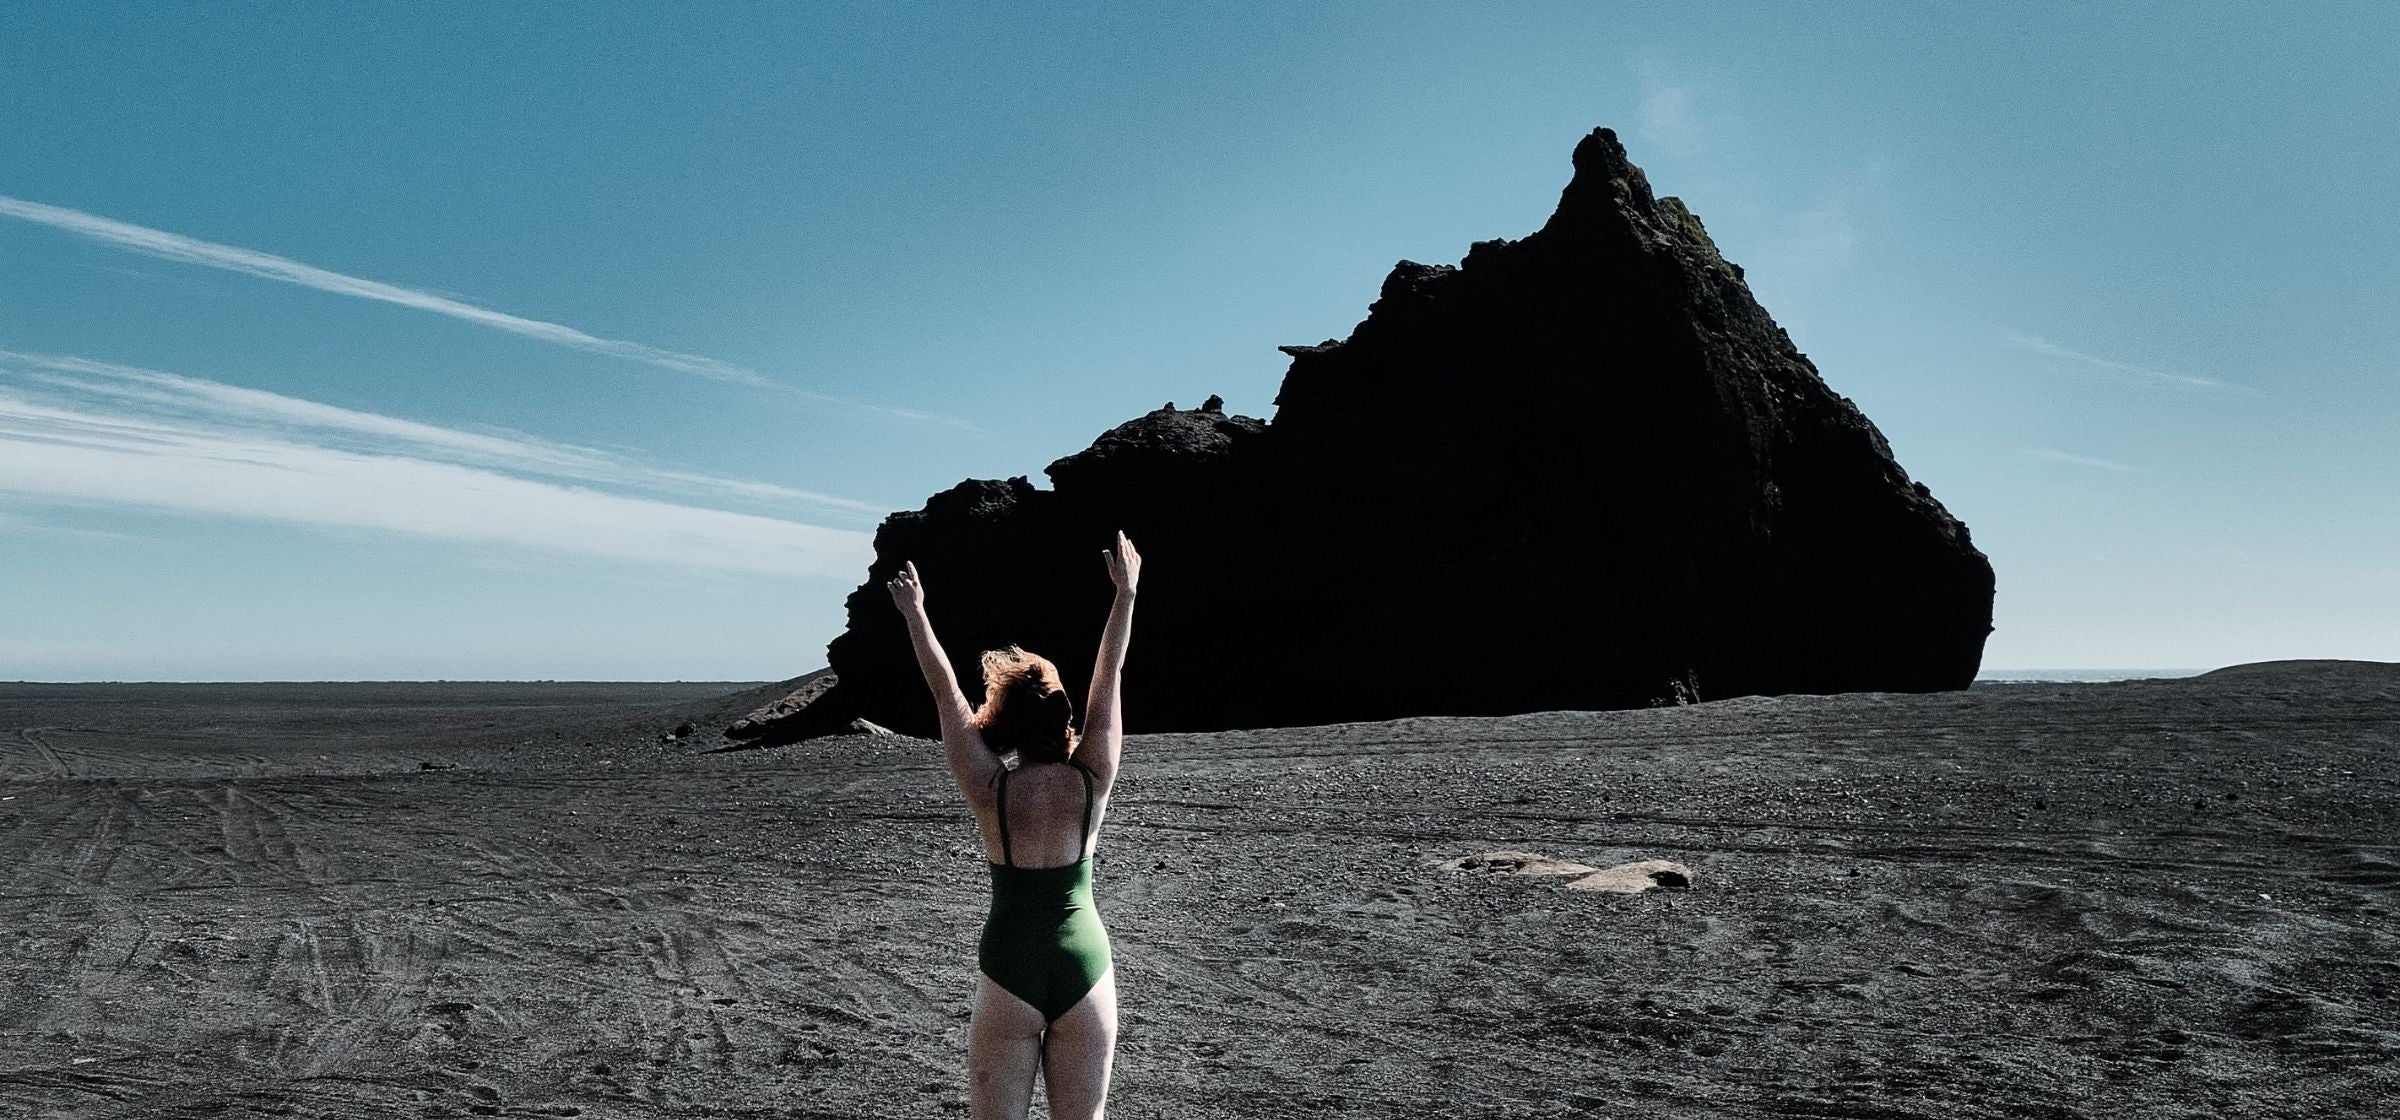 Eine Frau in einem grünen Bikini steht in einer felsigen Landschaft und hebt die Arme als Sympol für Freiheit. 